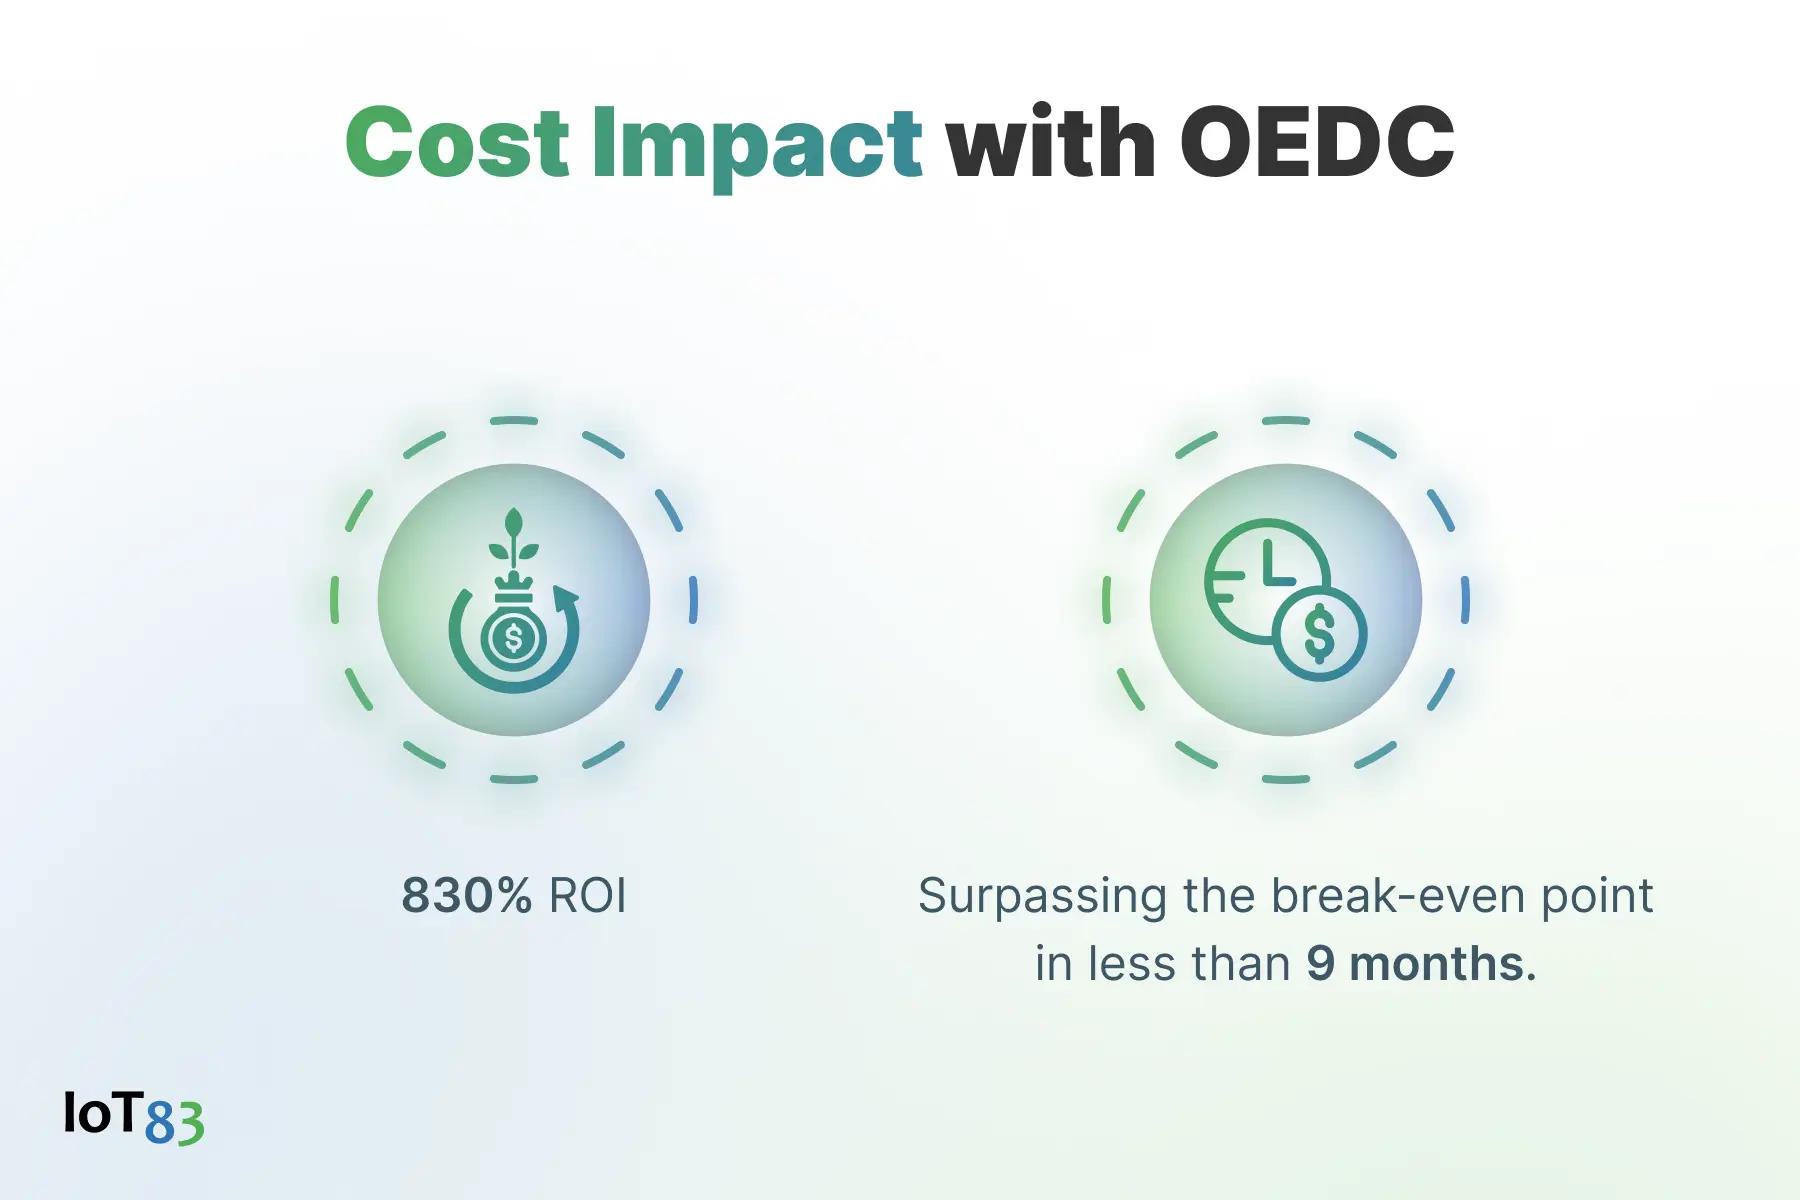 OEDC cost impact